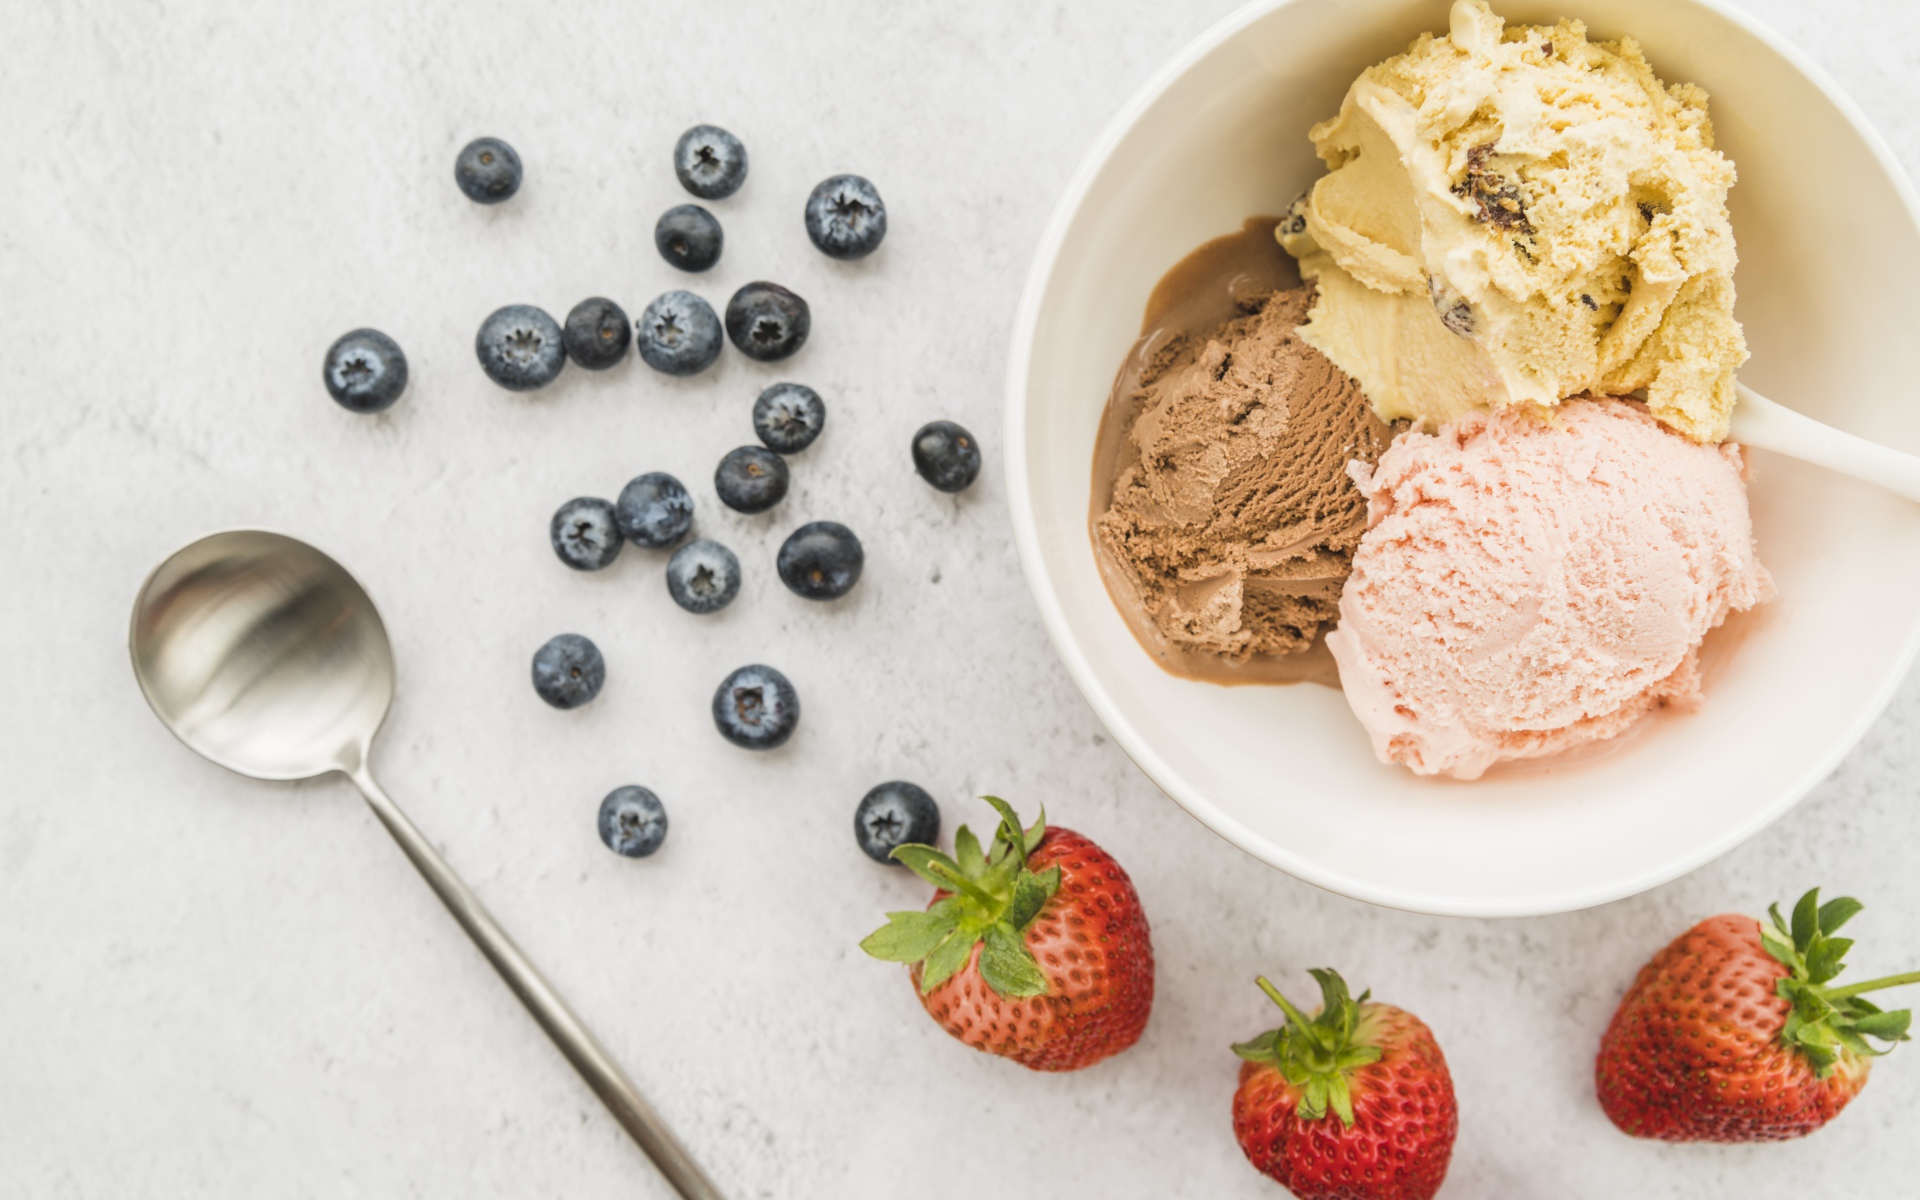 Мороженое на столе ягодами черники и клубники